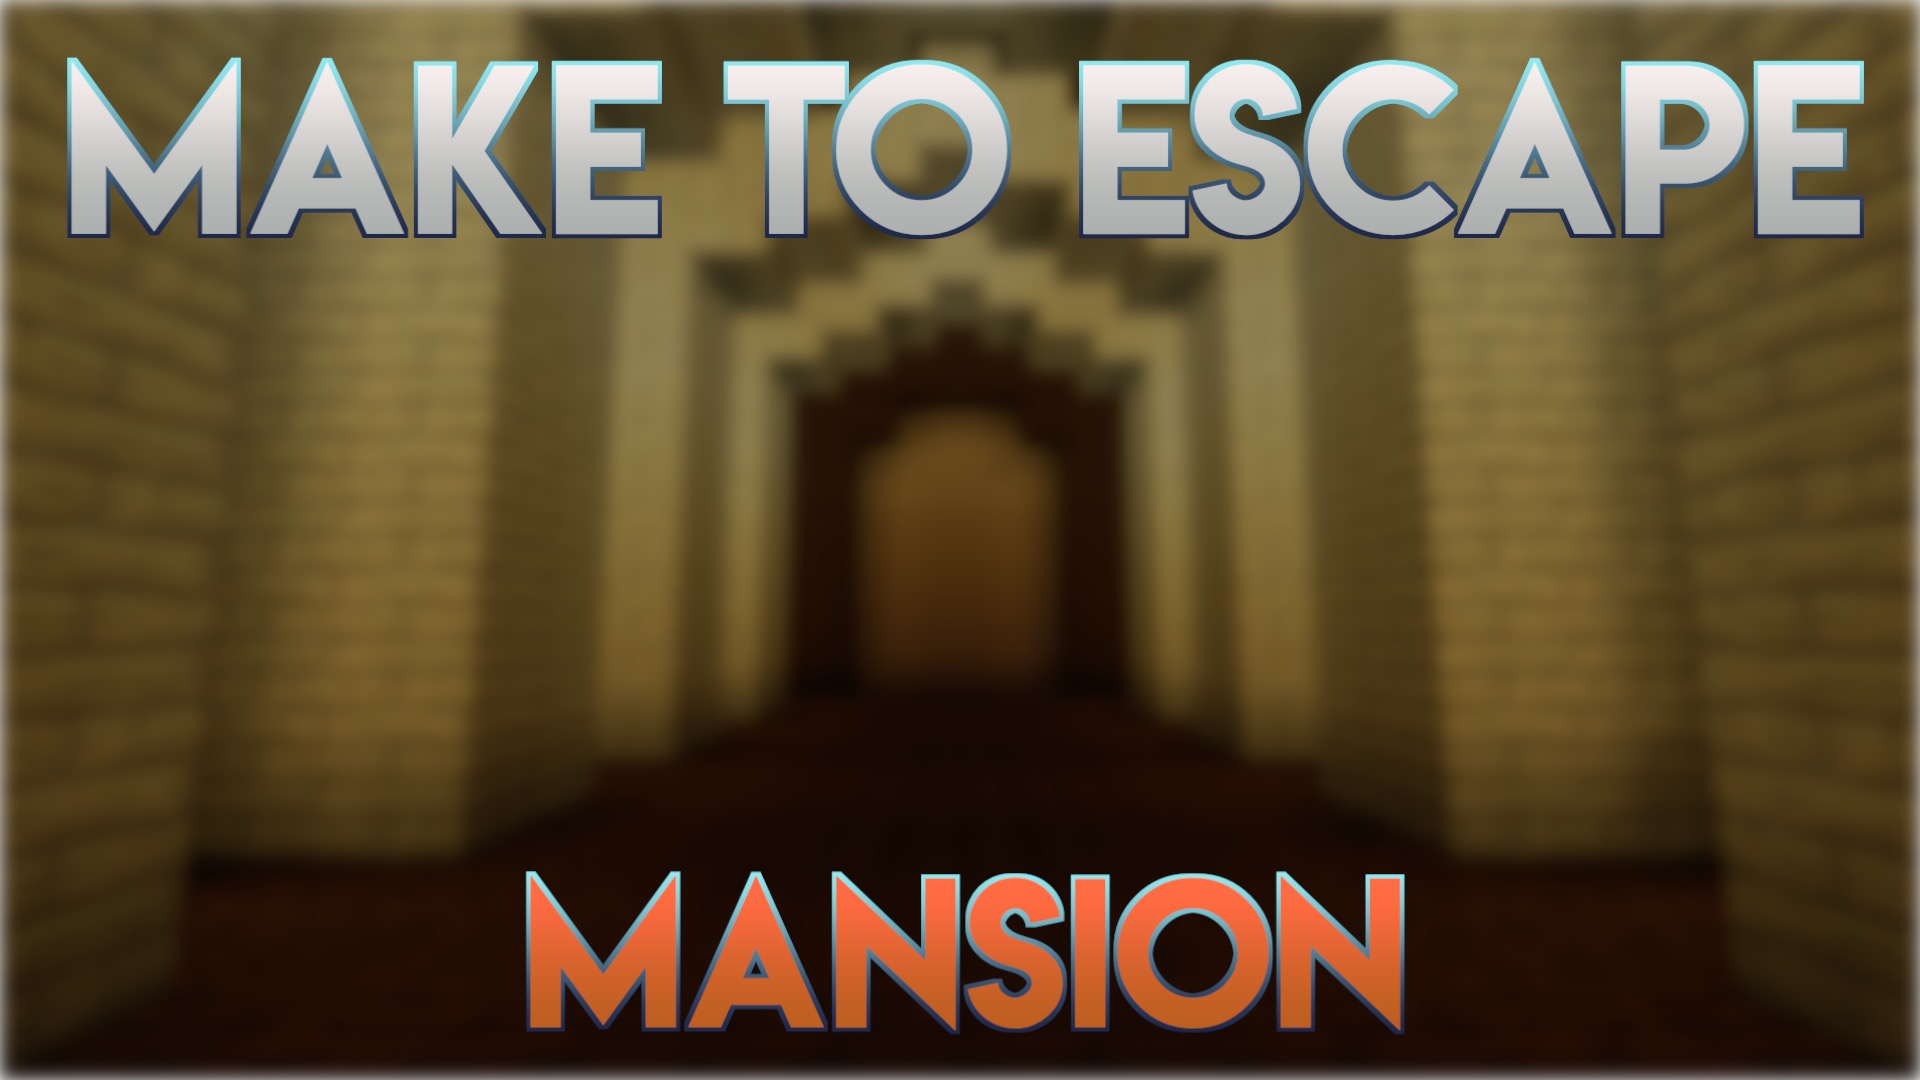 Make to Escape, Mansion